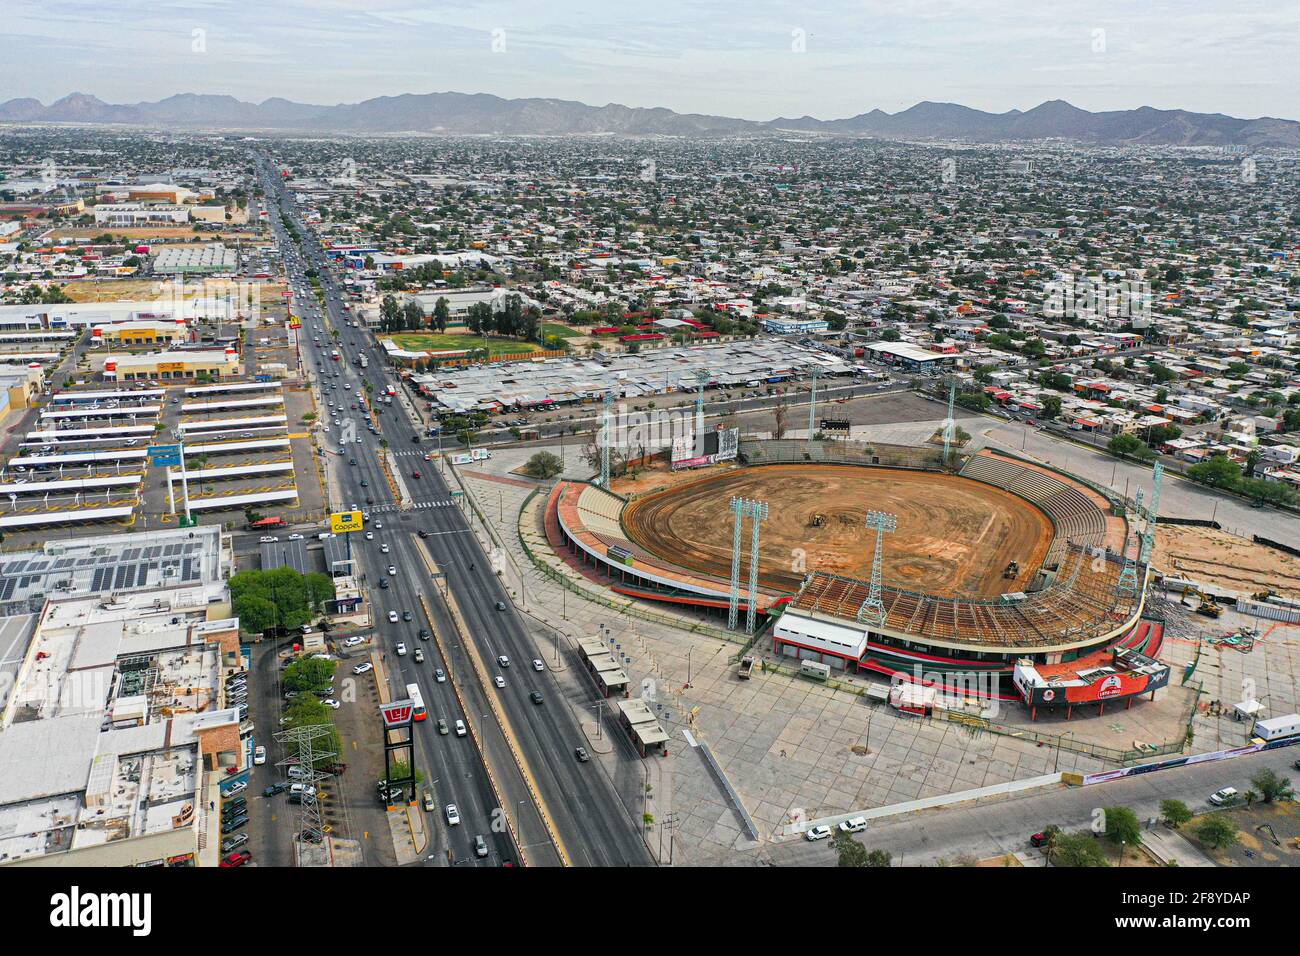 Vista Aerea de Estadio Sonora. Estadio de beisbol. (Photo: Luis Gutierrez  /NortePhoto) Aerial view of Sonora Stadium. Beisball Stadium. (Photo: Luis  Gutierrez / NortePhoto Stock Photo - Alamy